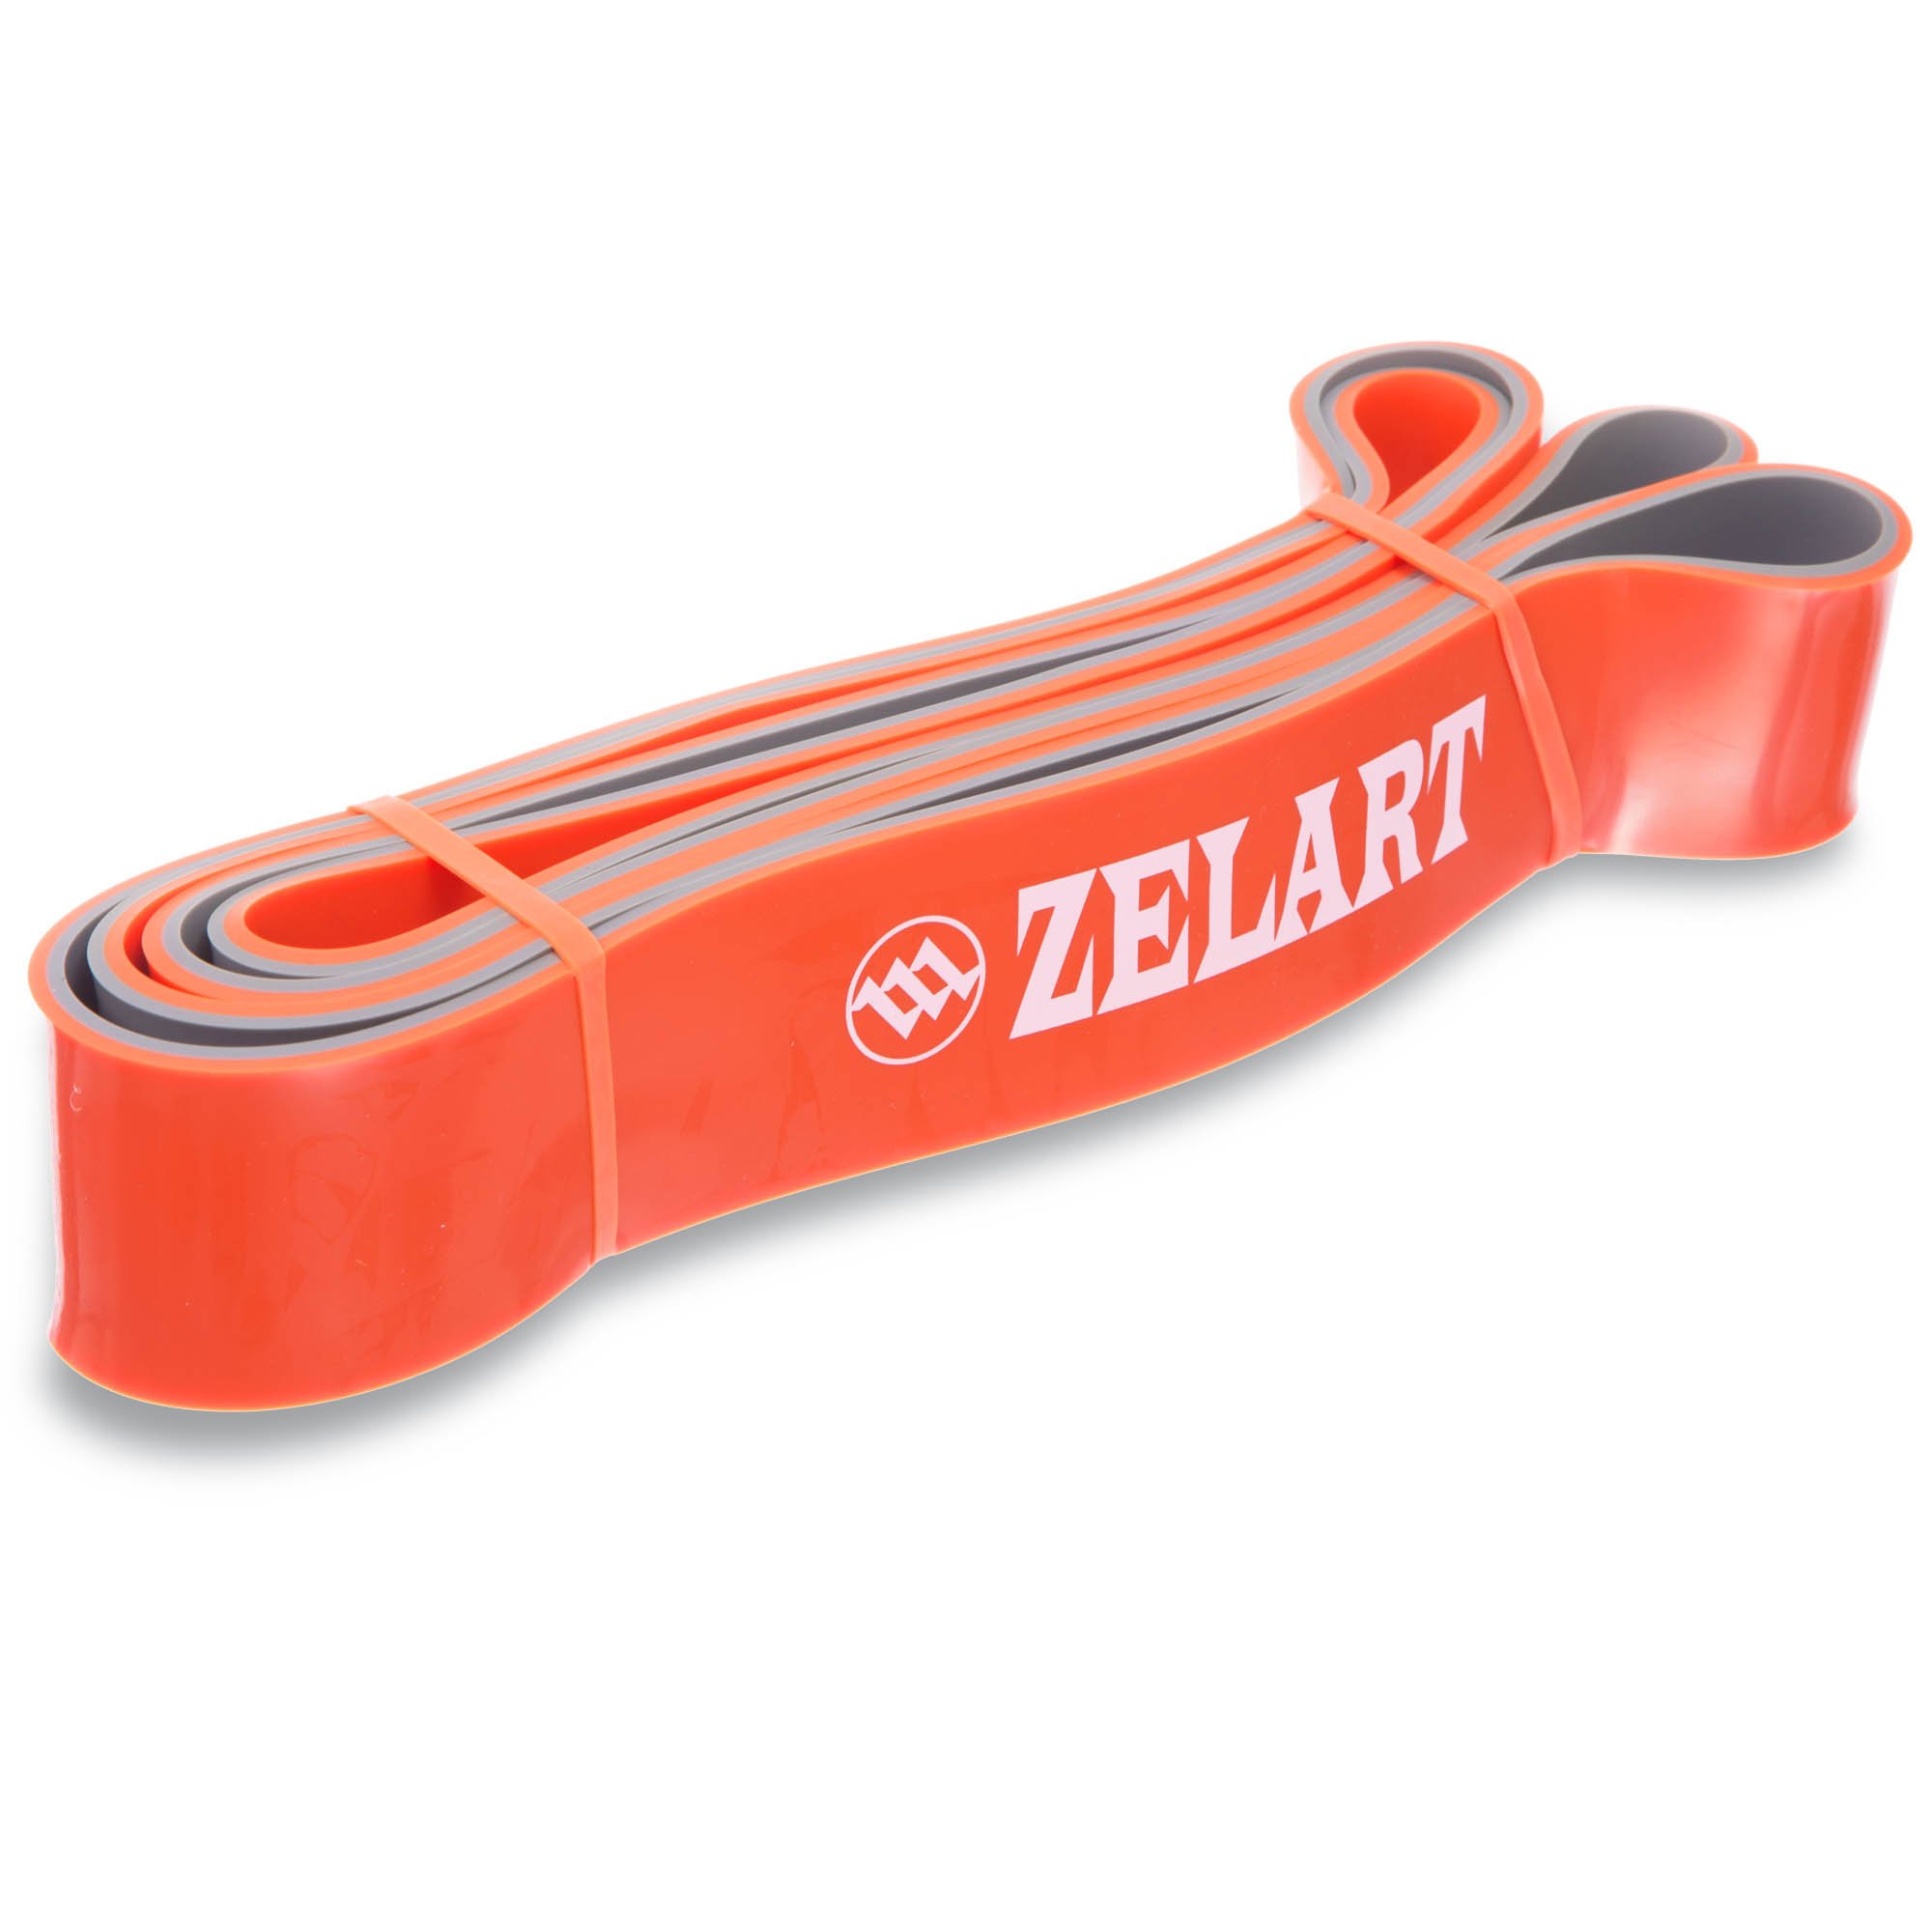 Zelart резинка. Резину для подтягивания Zelart. Эспандер лента кольцо 2080x4.5x10 мм 2-15 кг (двухцветн). Резиновые петли Power Band. Резиновая петля для подтягивания